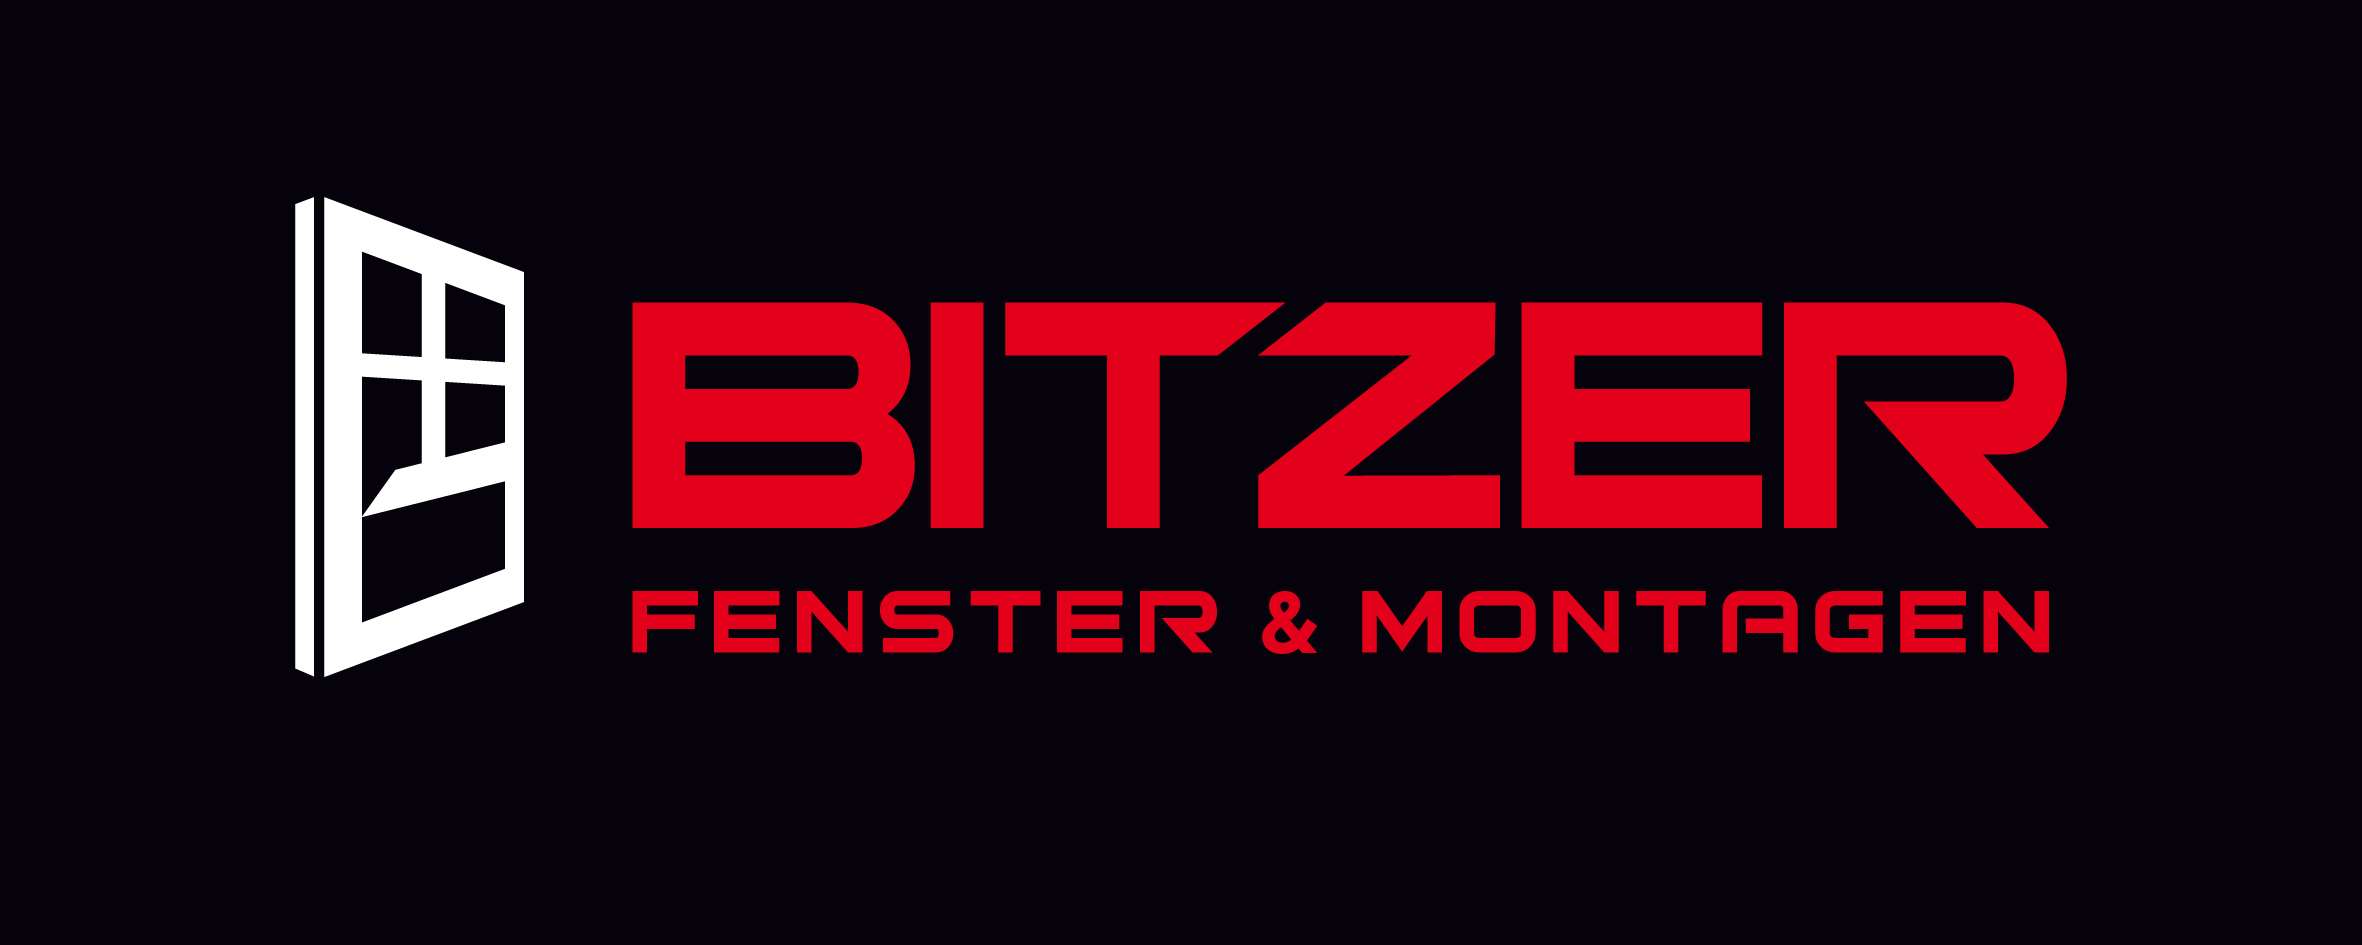 Bitzer Fenster & Montagen GmbH